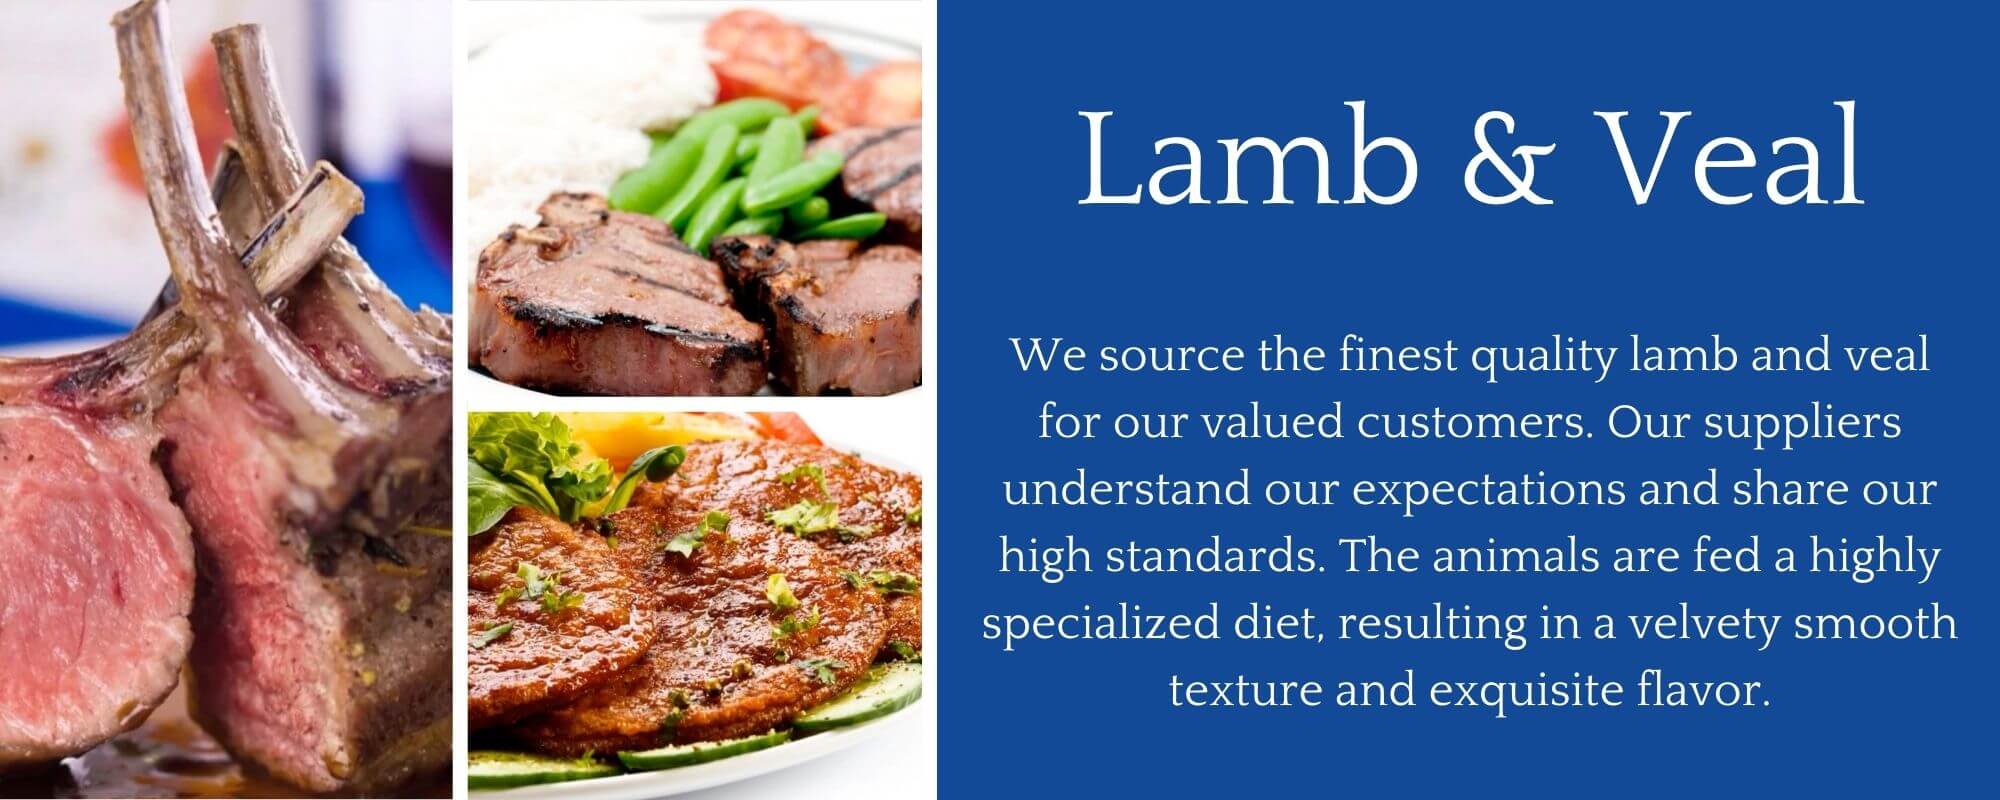 Lamb & Veal